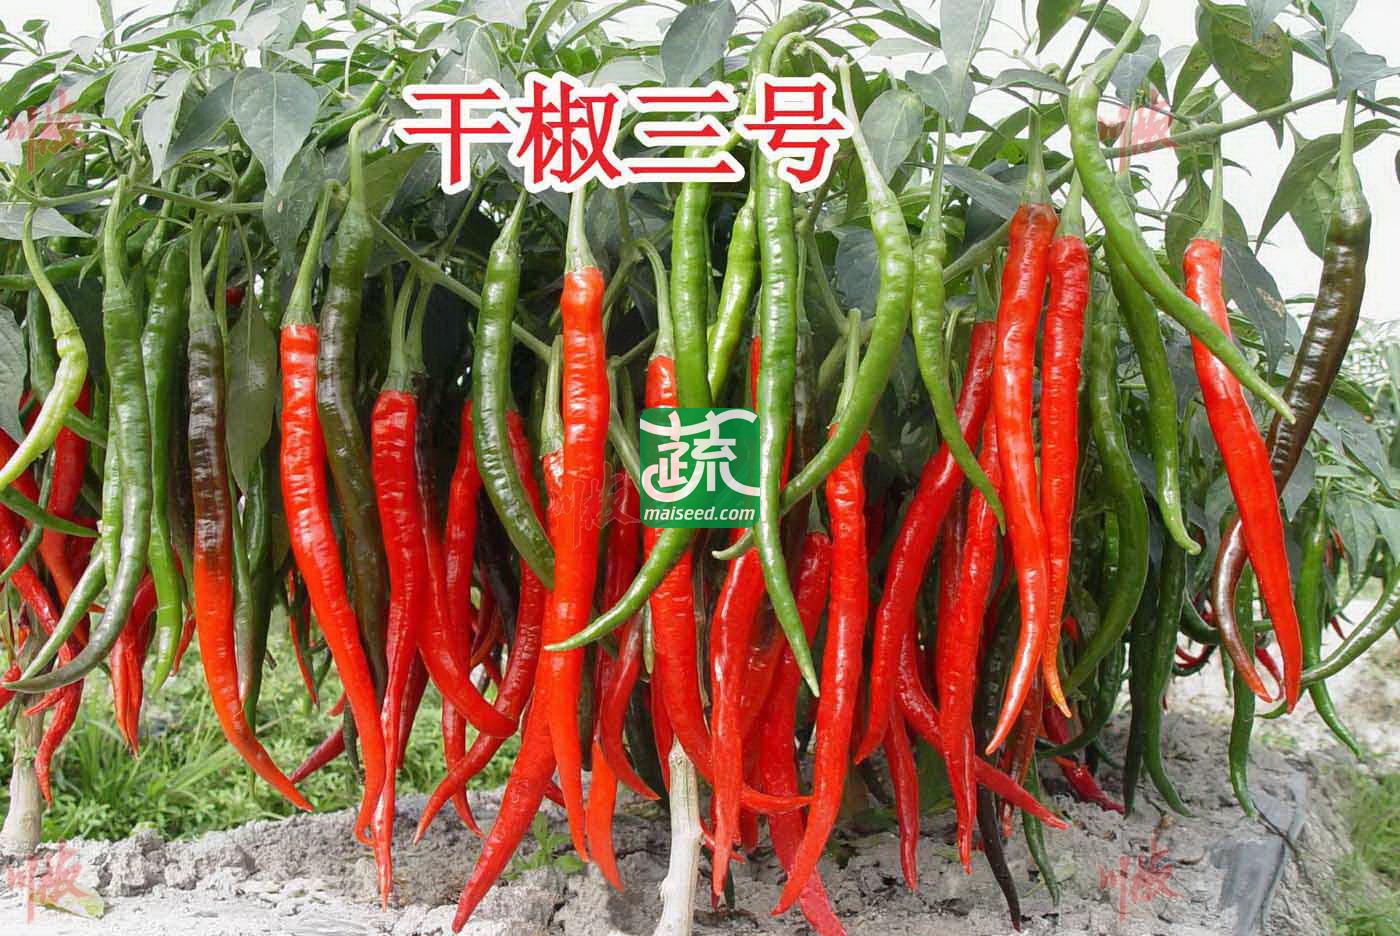 四川川椒 干椒三号辣椒种子 鲜红椒产量3500~4000kg 干椒产量700~800kg 干制和加工豆瓣酱的最佳品种 辣椒种子 8克装